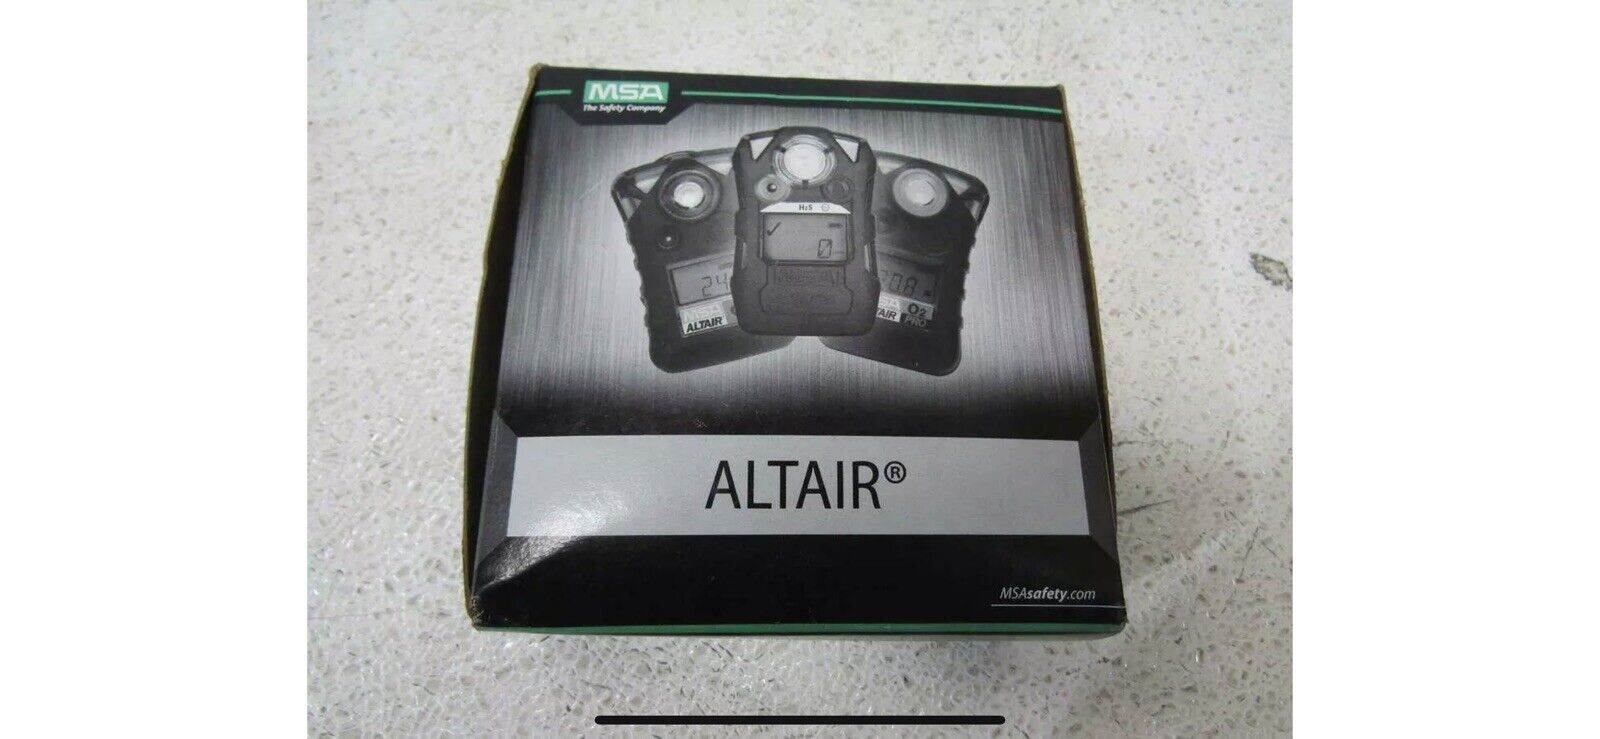 MSA Altair 2x Carbon Monoxide Detector - 10153986C Brand New - P